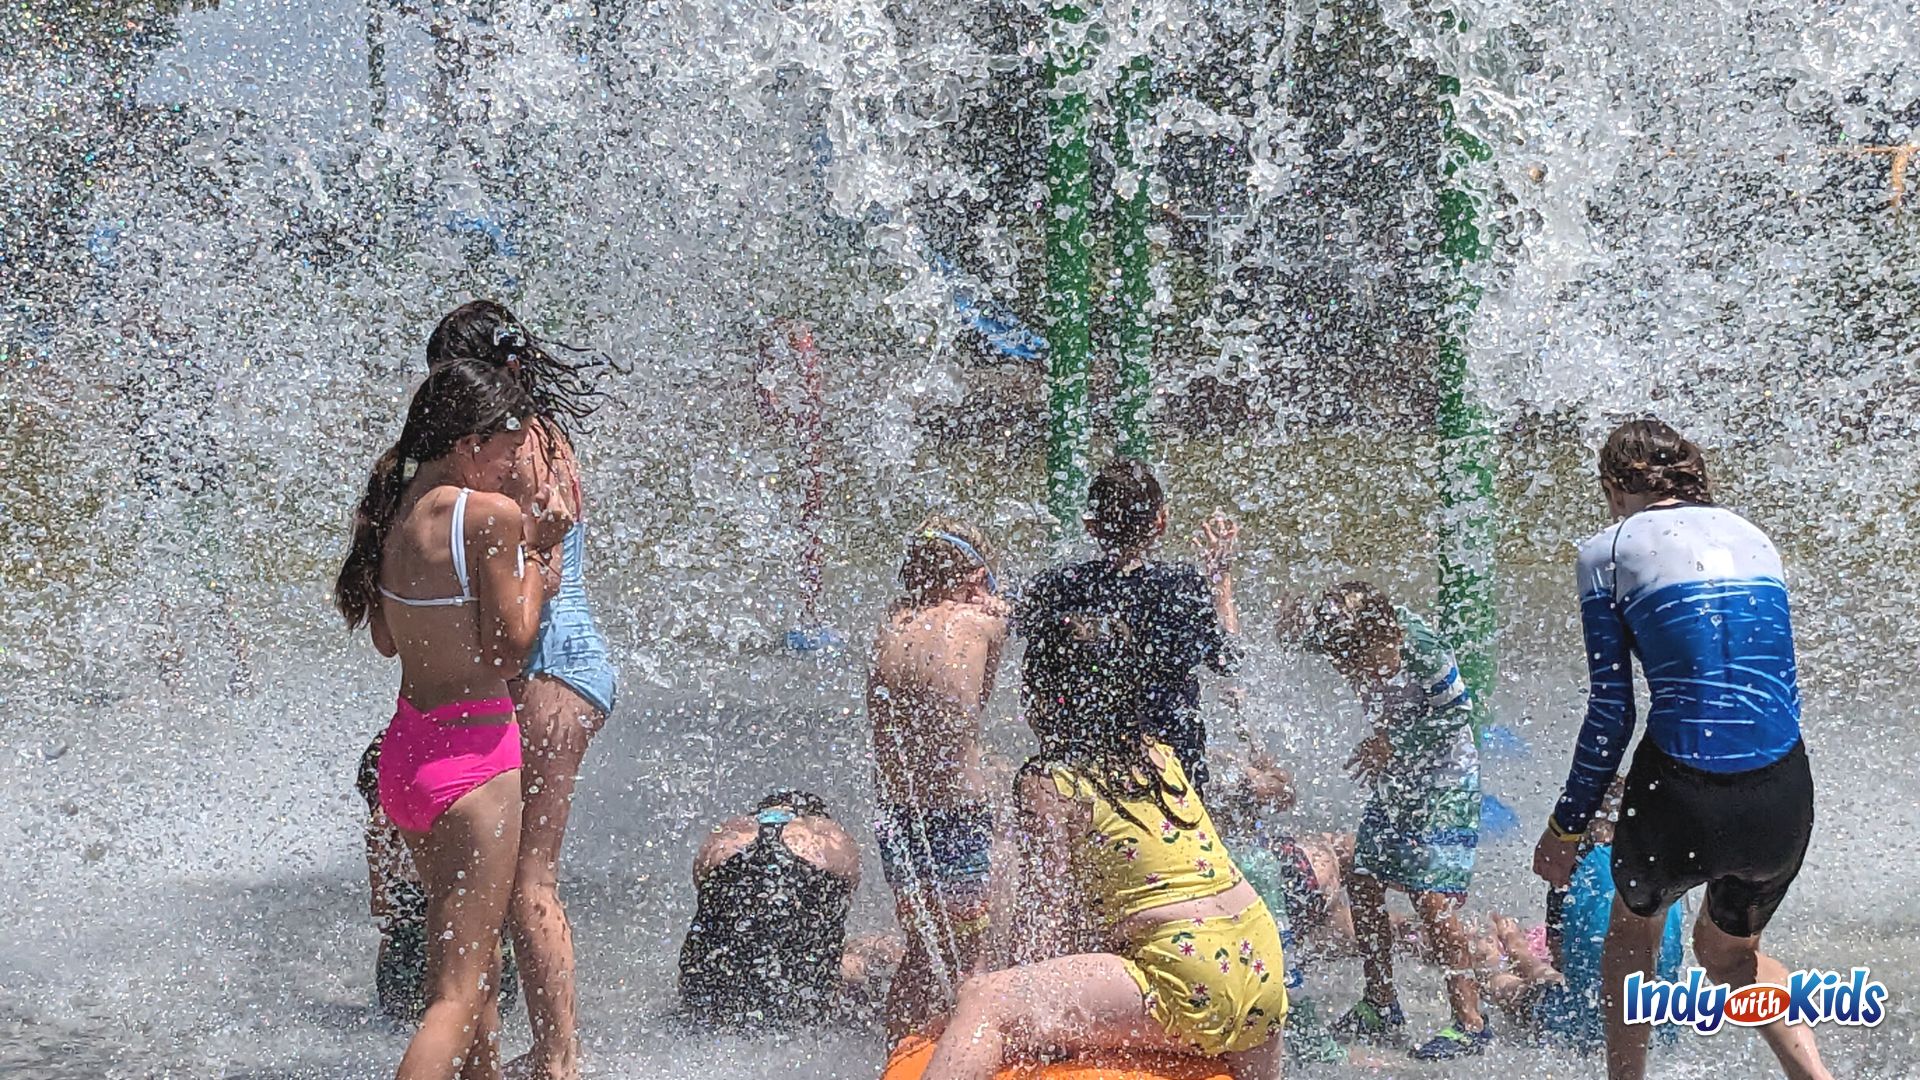 Kids love the splash from the giant dumping bucket at the Kephart Park splash pad.